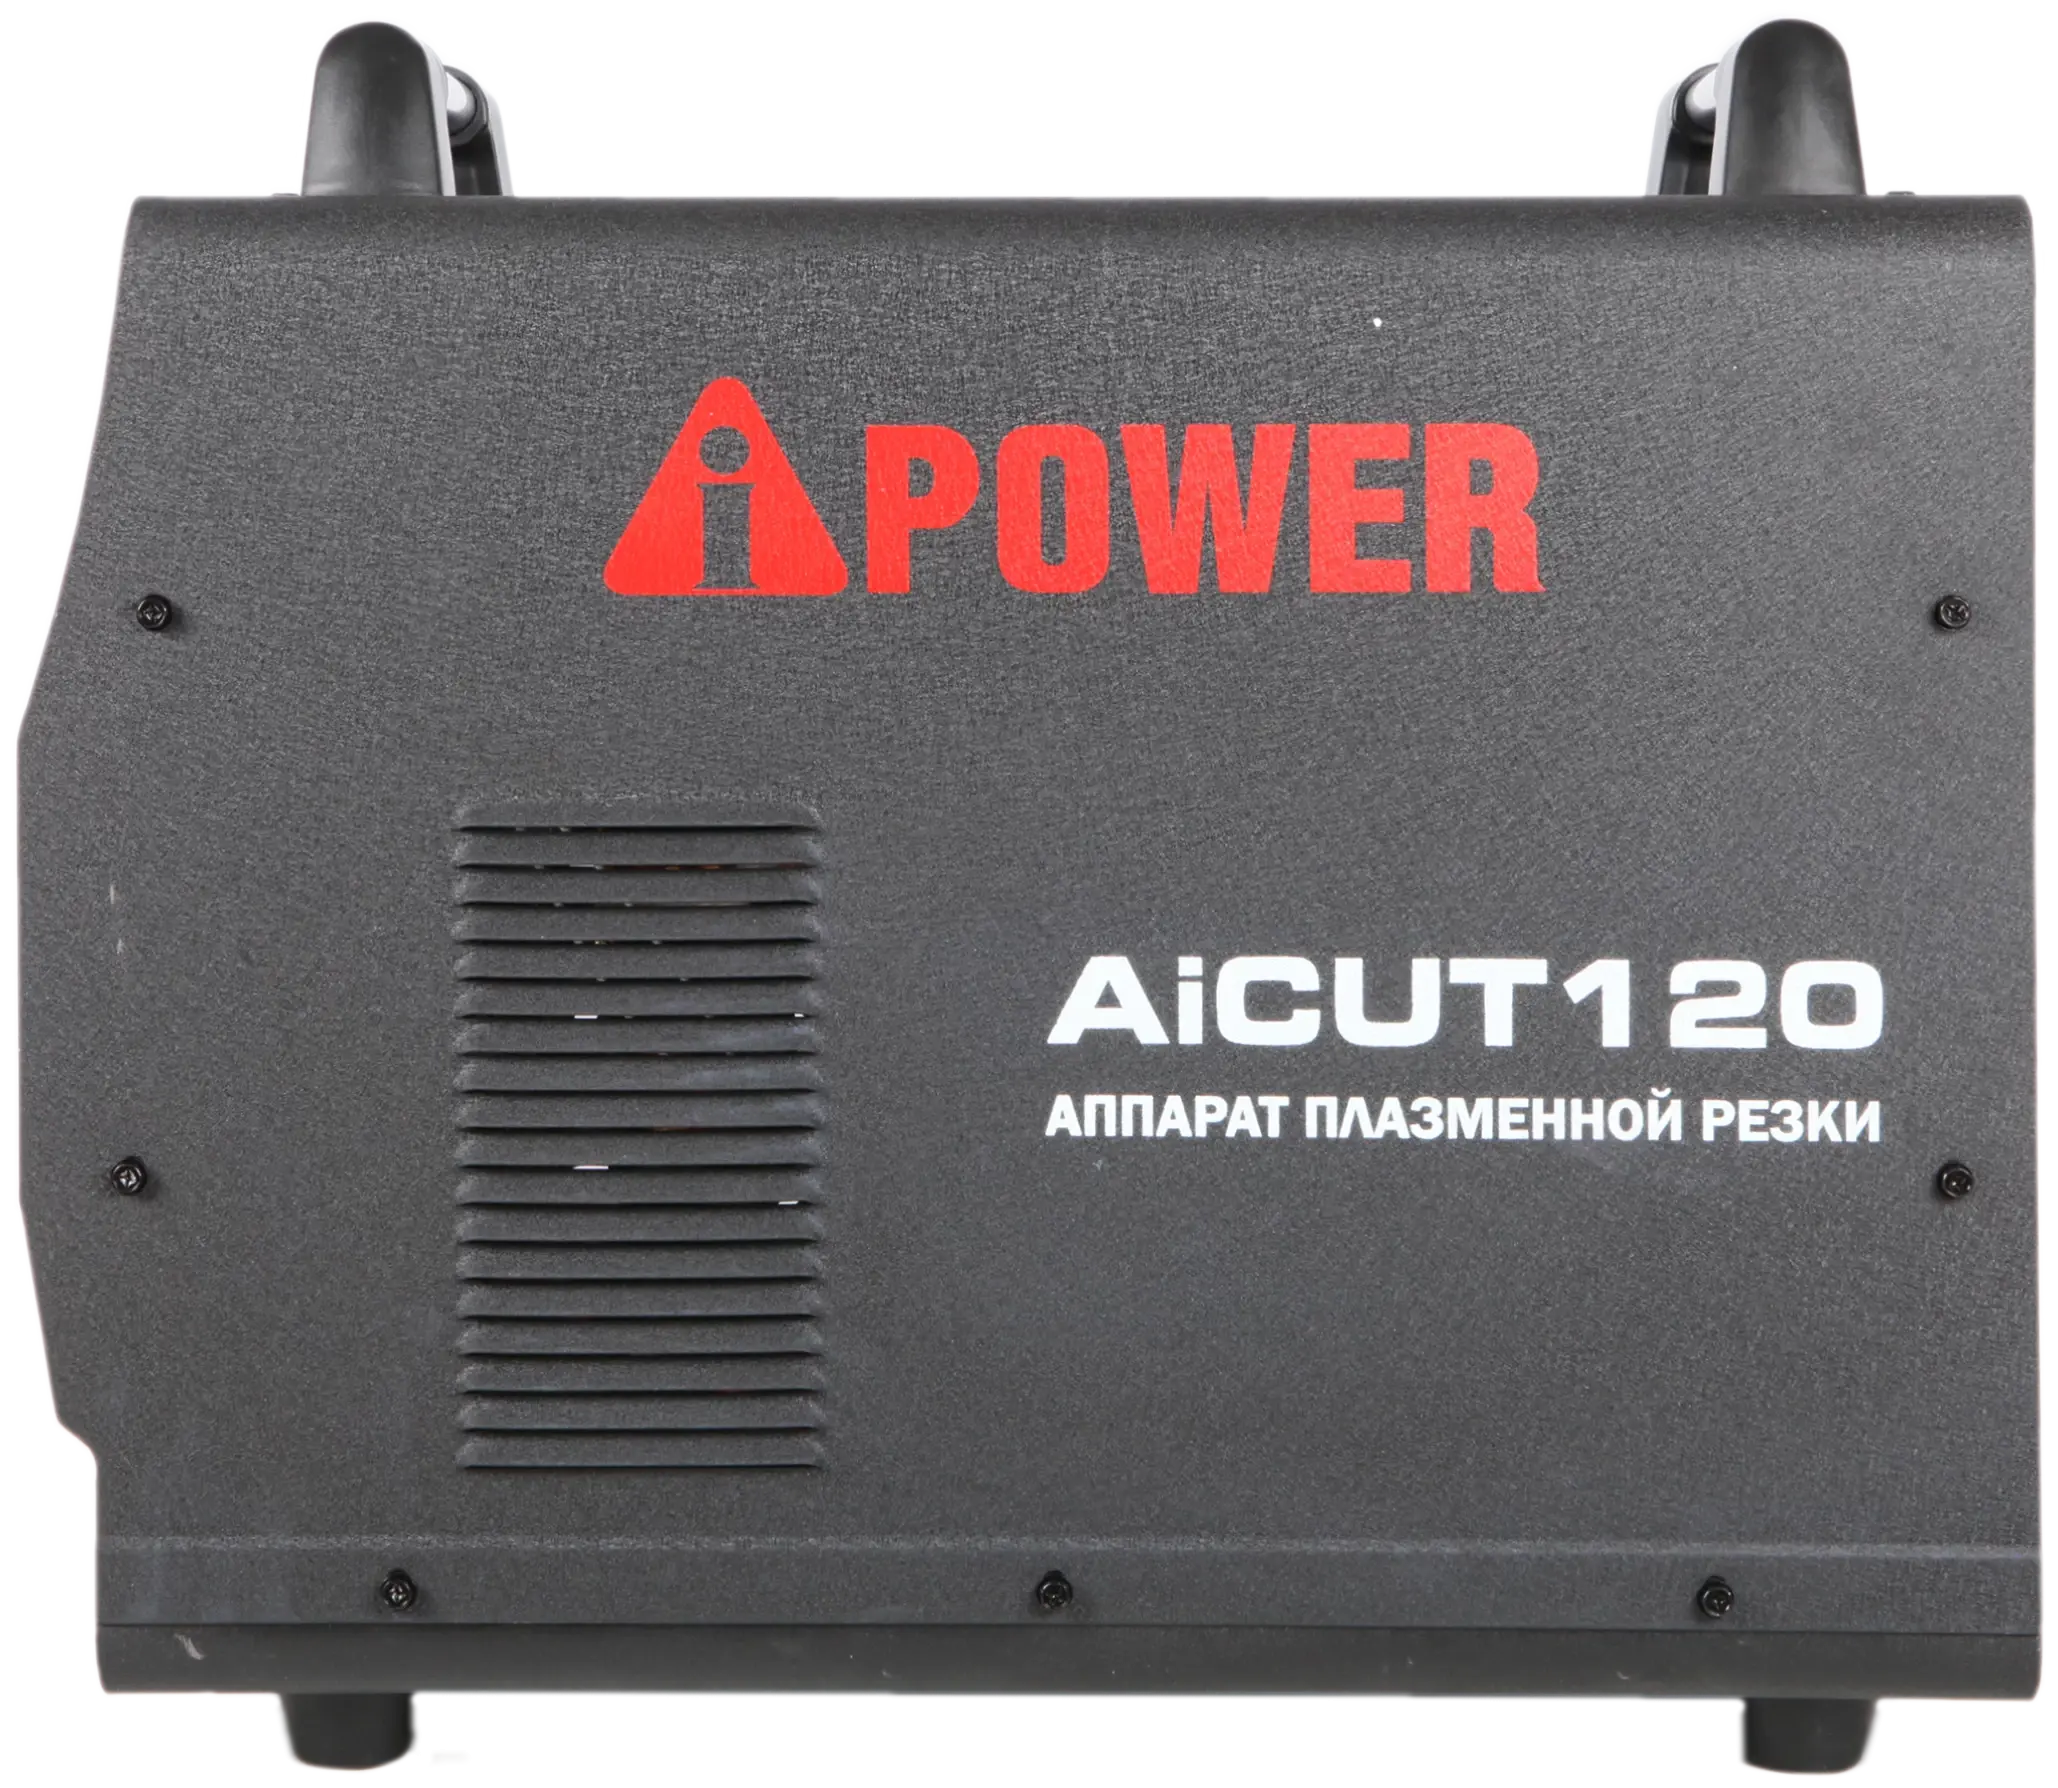 Аппарат плазменной резки A-IPOWER AICUT120 Гарантия 4 года Официальный магазин